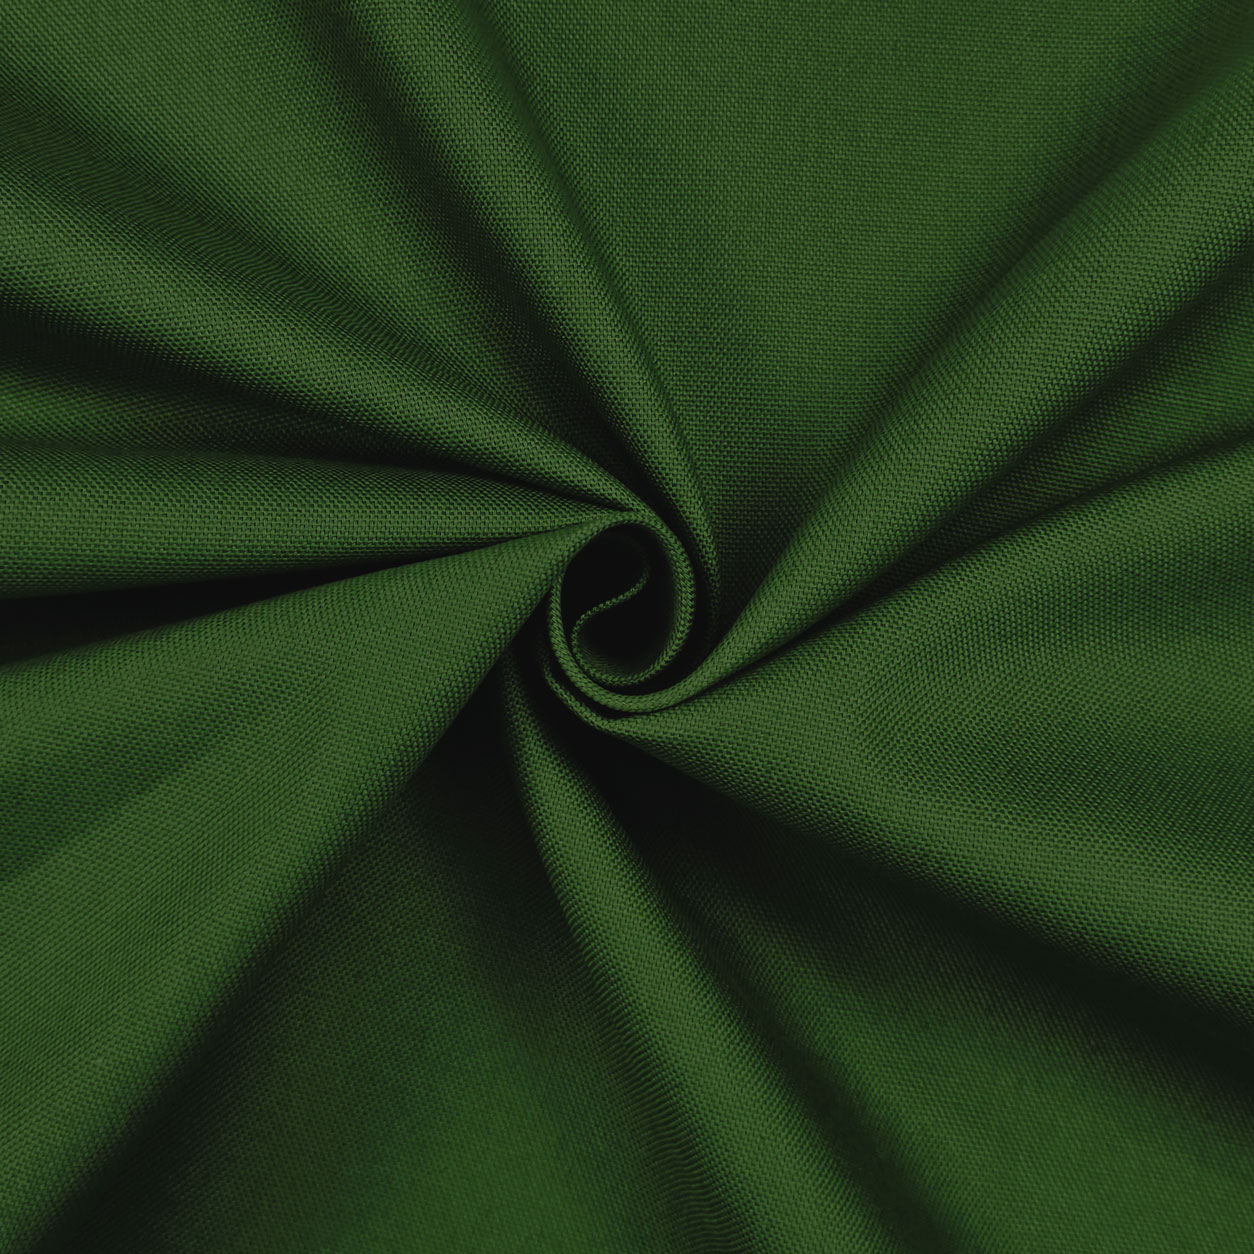 Tessuto panama di cotone verde oliva